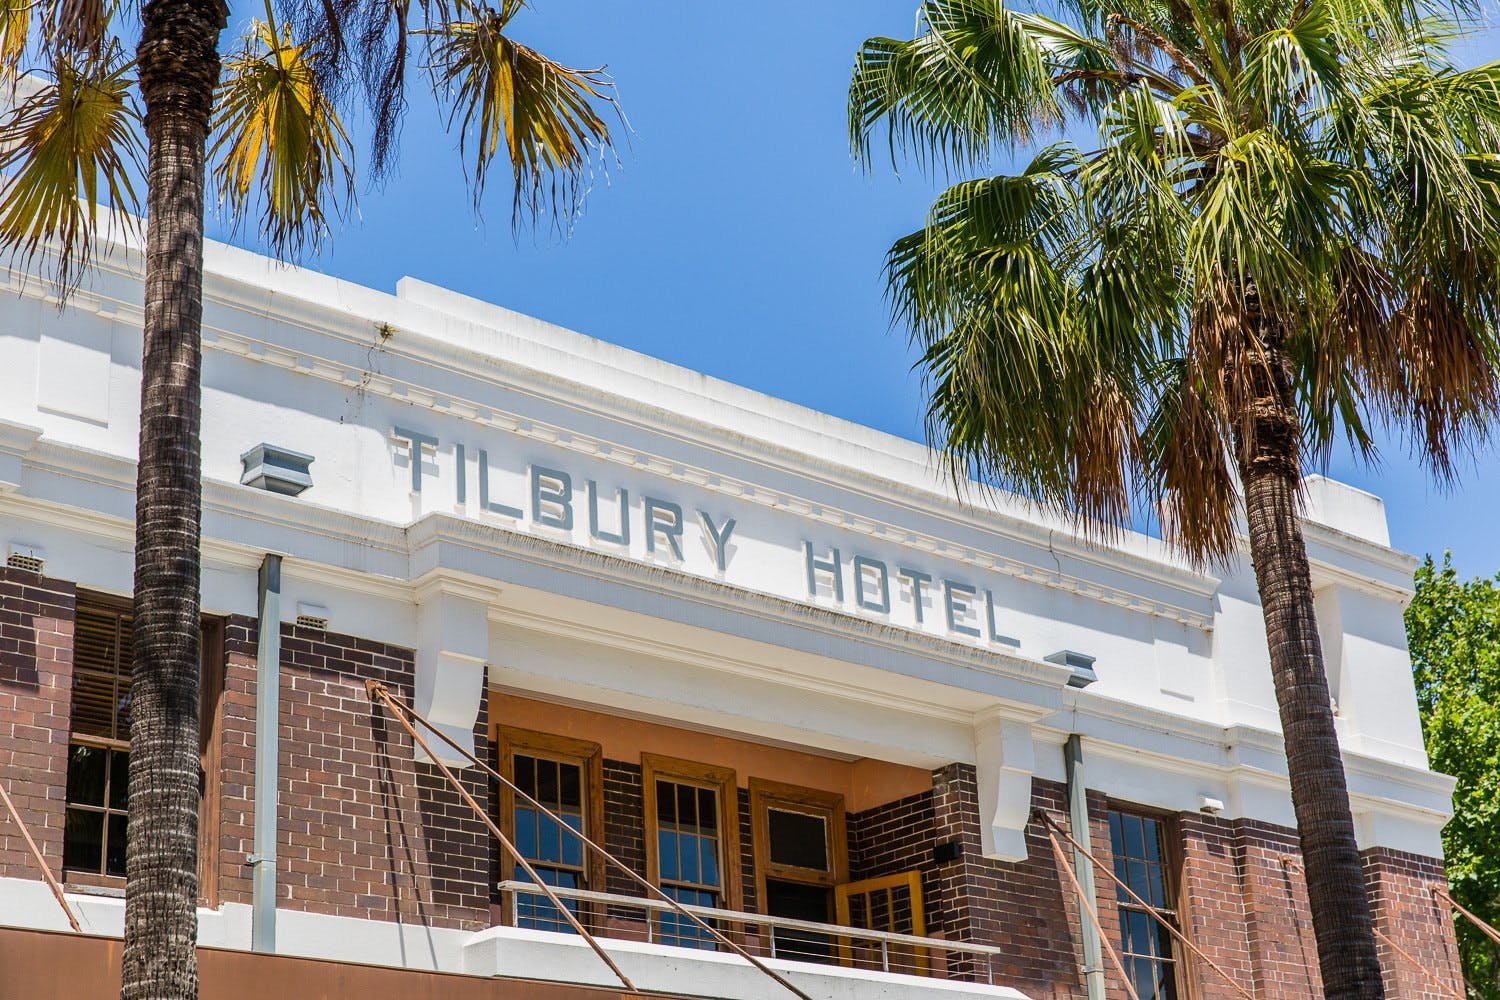 The Tilbury - Pubs Sydney